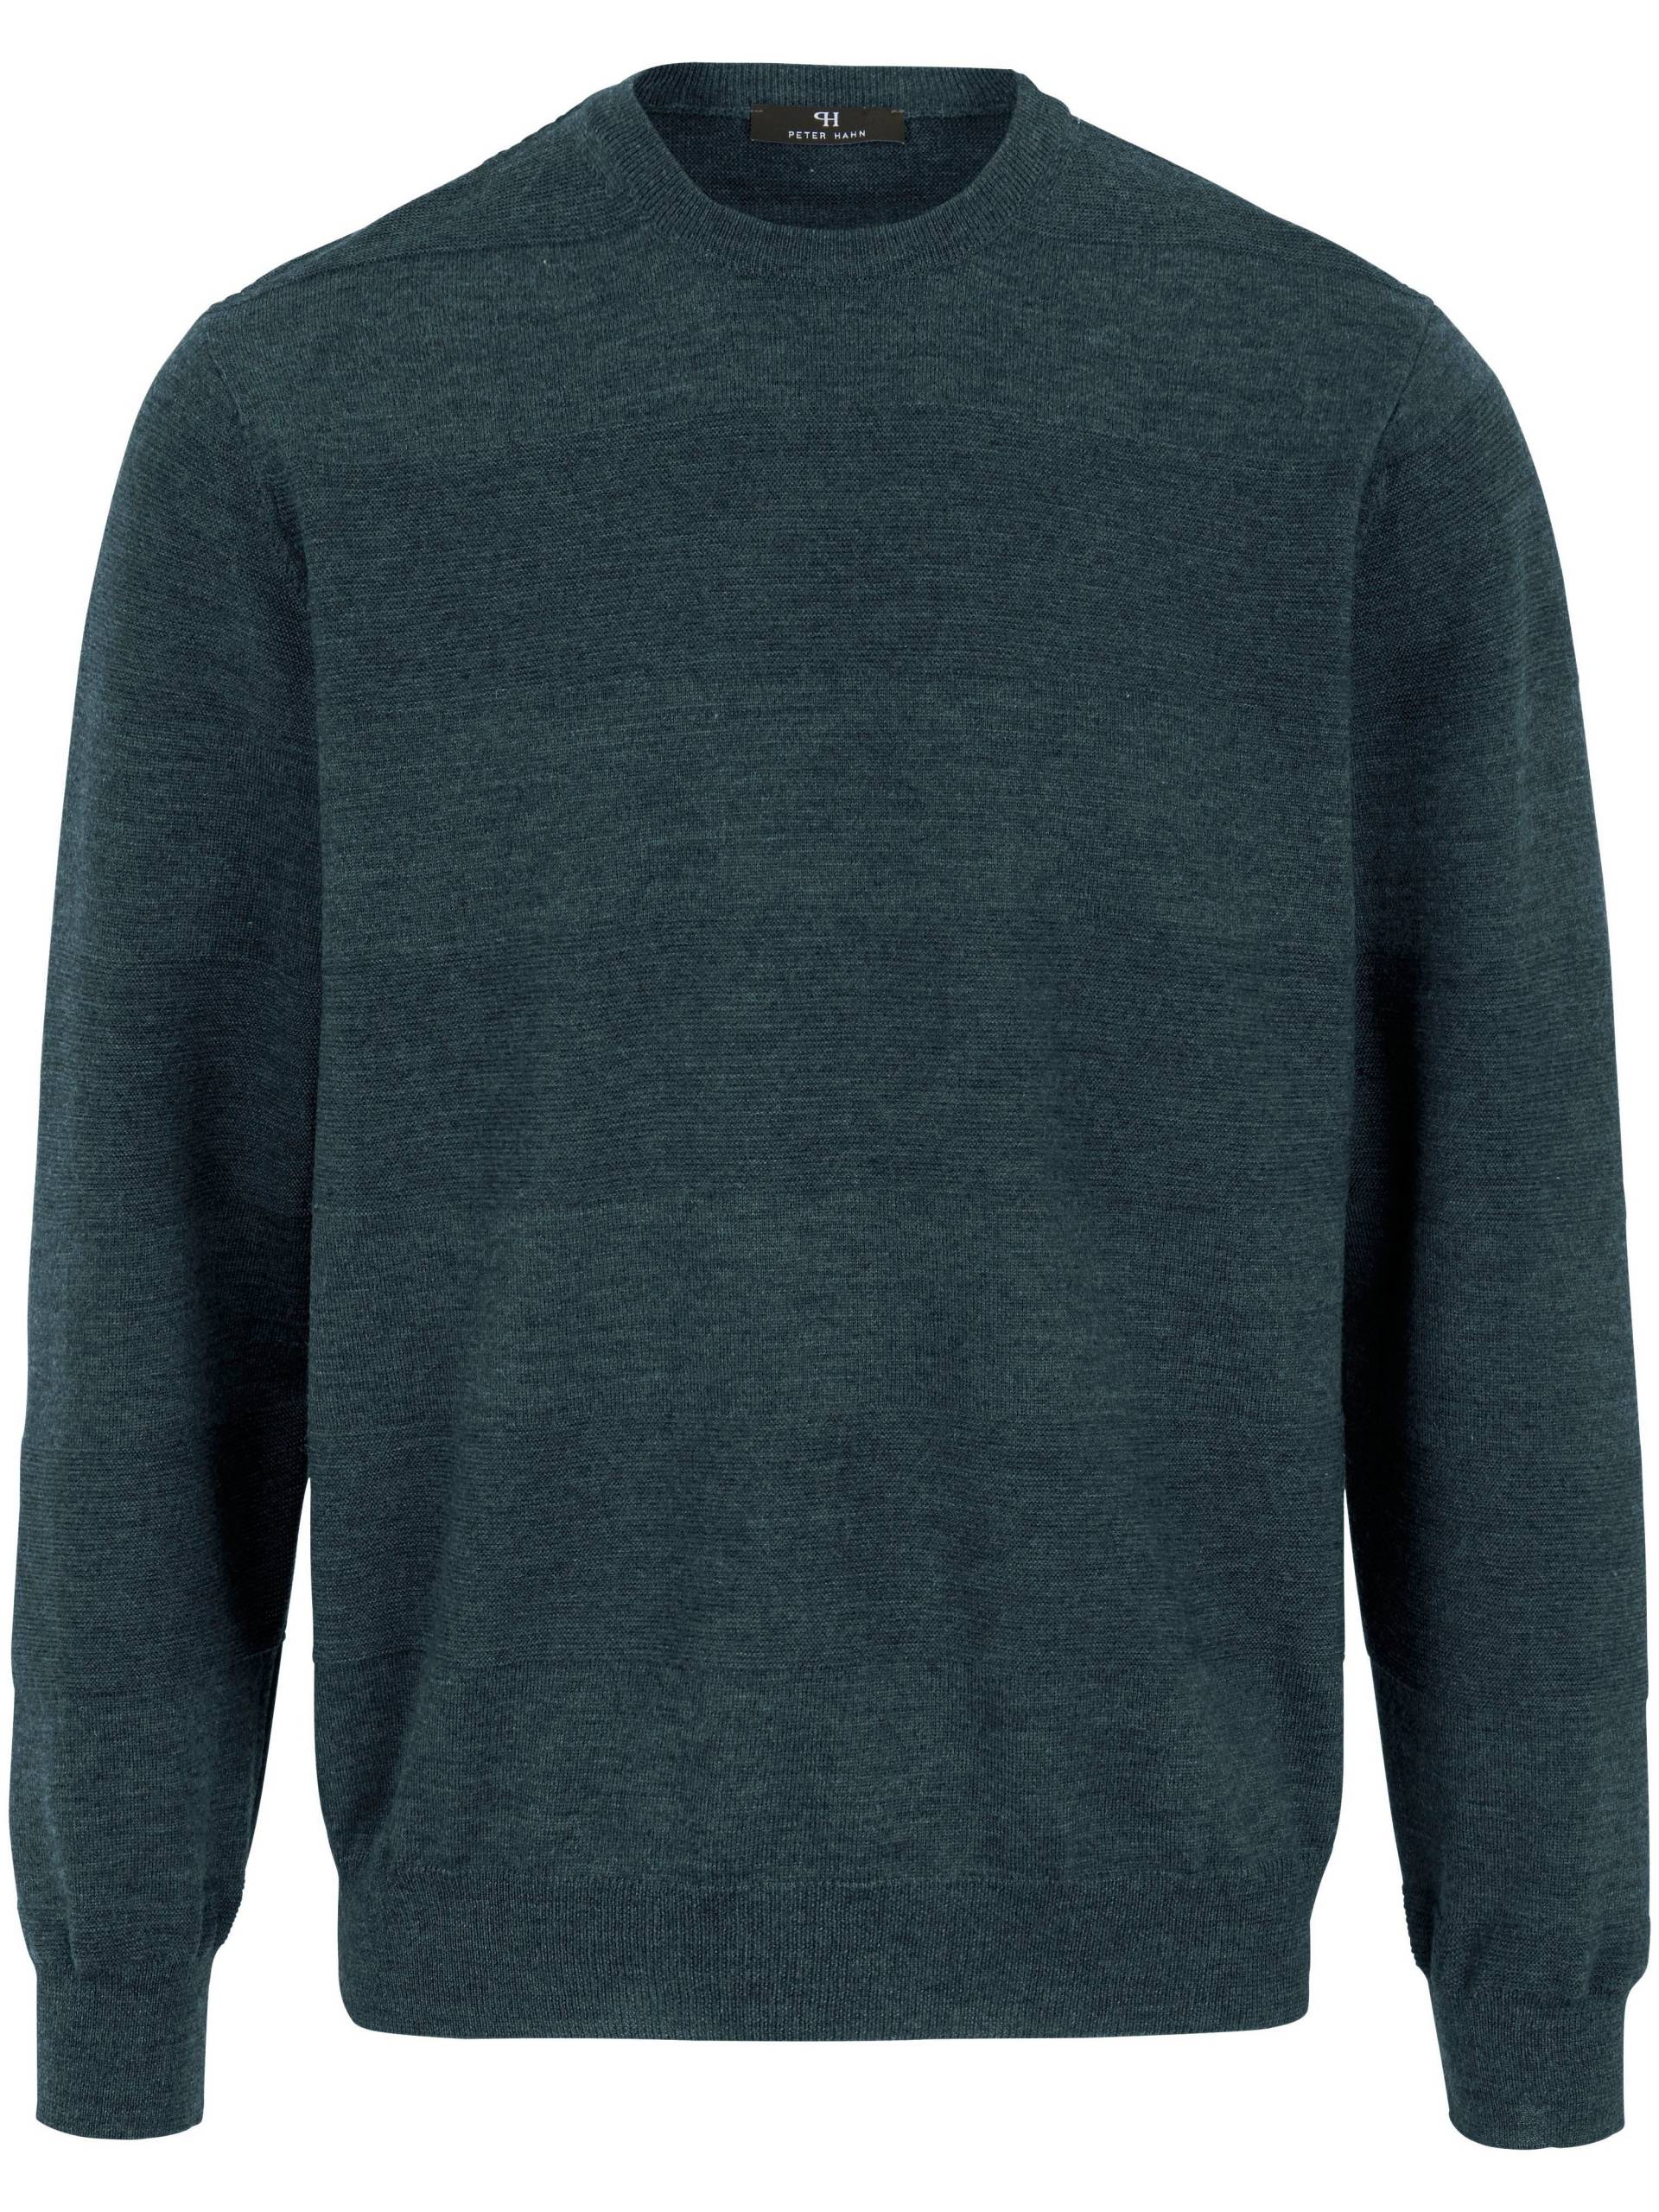 Rundhals-Pullover aus 100% Schurwolle FILIVIVI Peter Hahn grün Größe: 48 von Peter Hahn